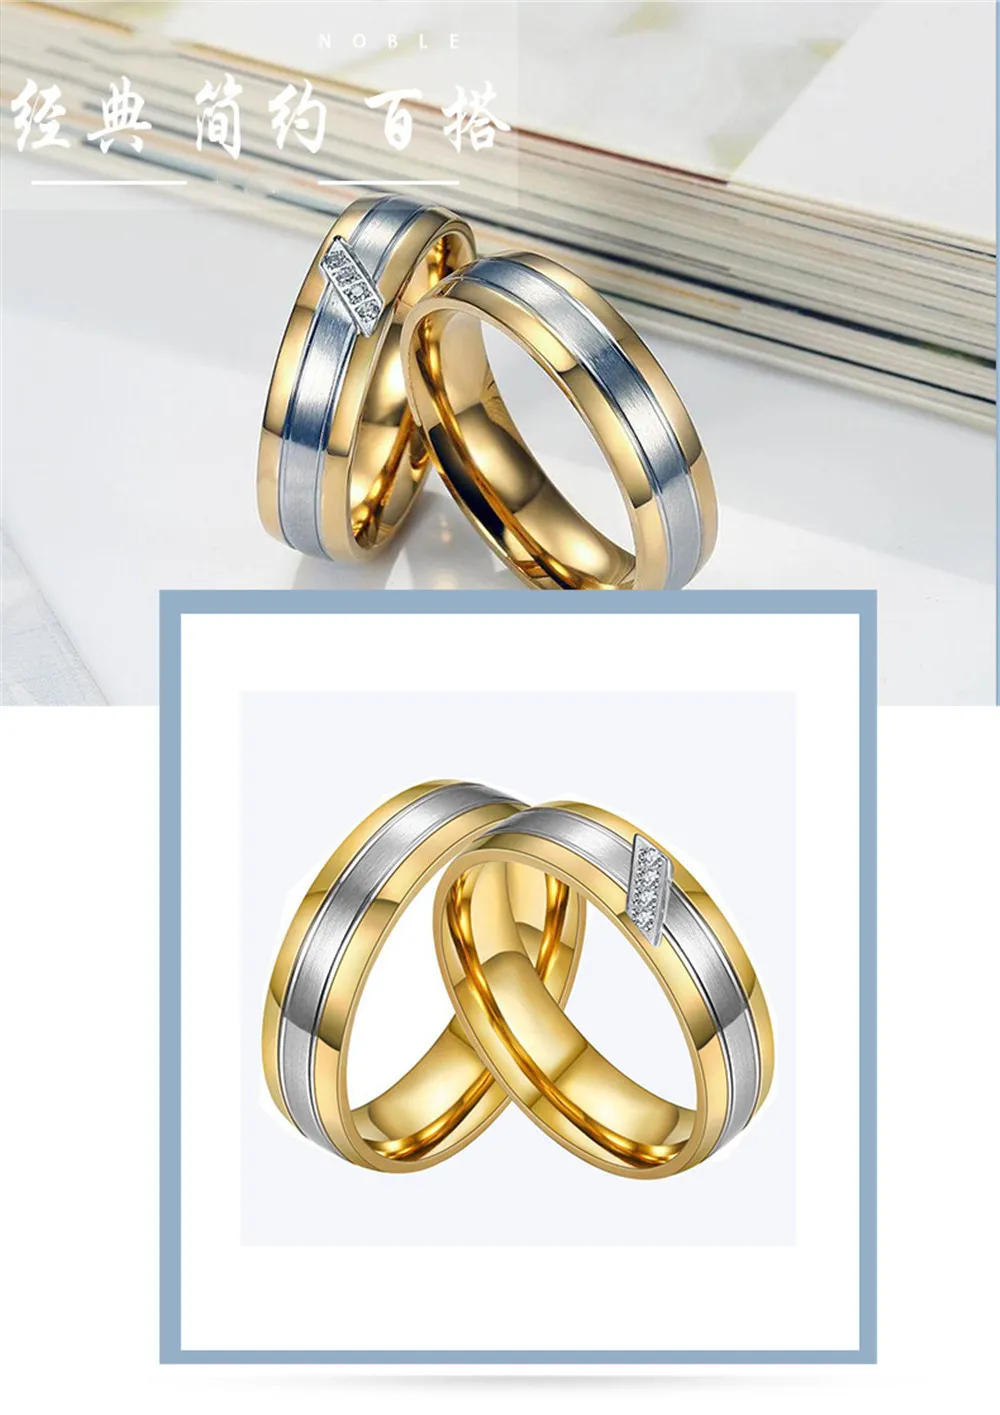 Çiftler Erkekler İçin Halkalar Kadınları Onu AAA Zirkon Elmaslar Altın Ton Titanyum Paslanmaz Çelik Düğün Nişan Yüzük Seti Jewelry6639244